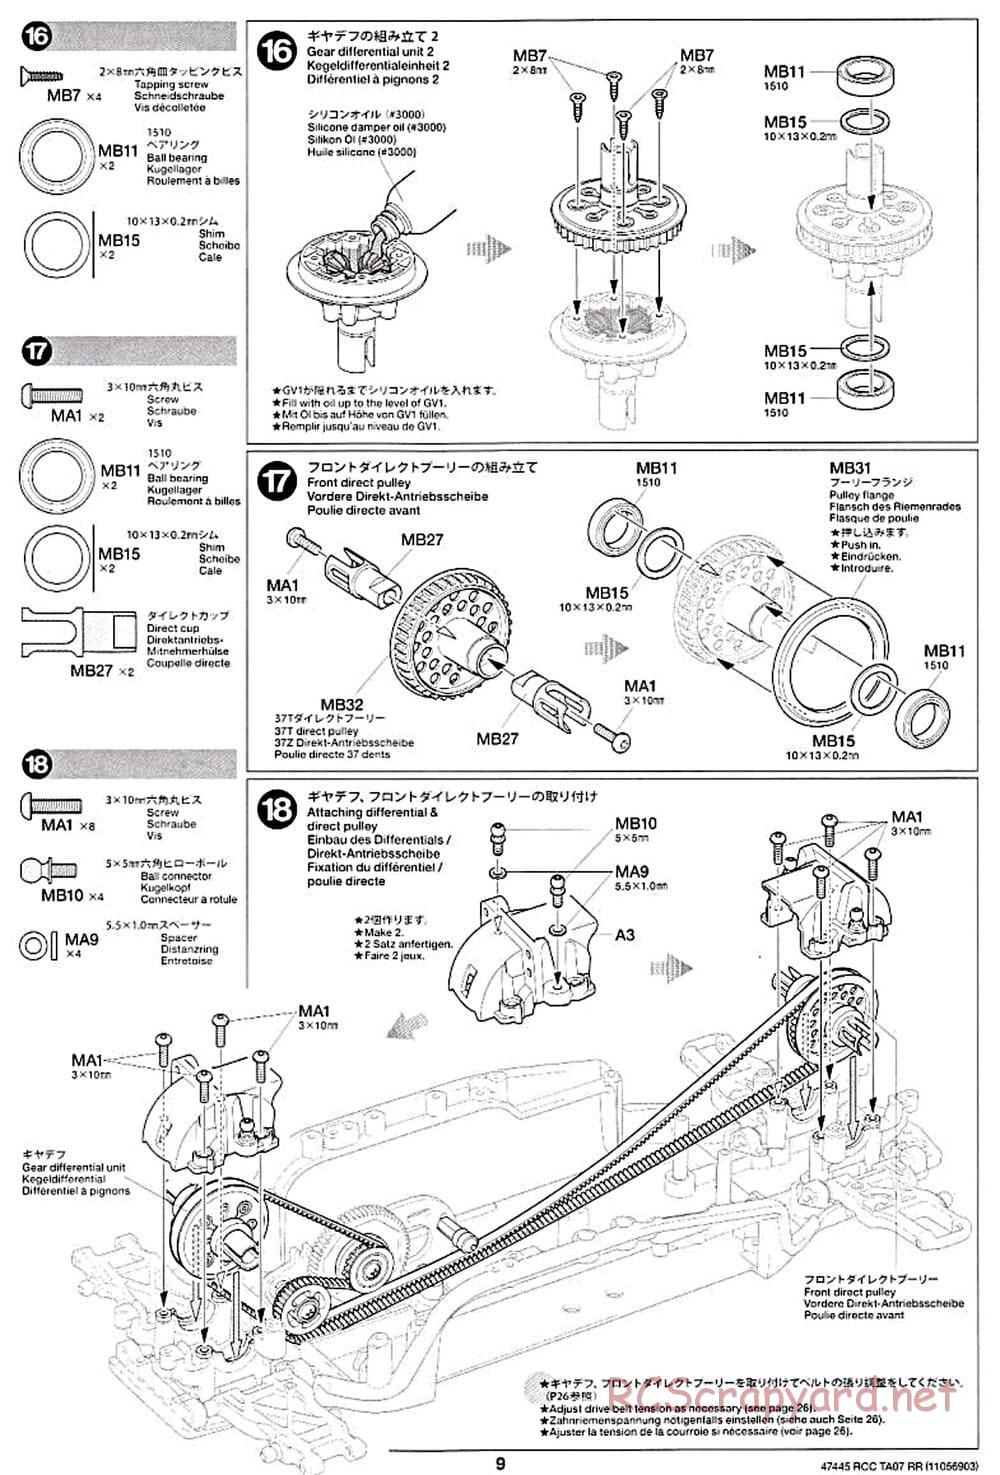 Tamiya - TA07 RR Chassis - Manual - Page 9